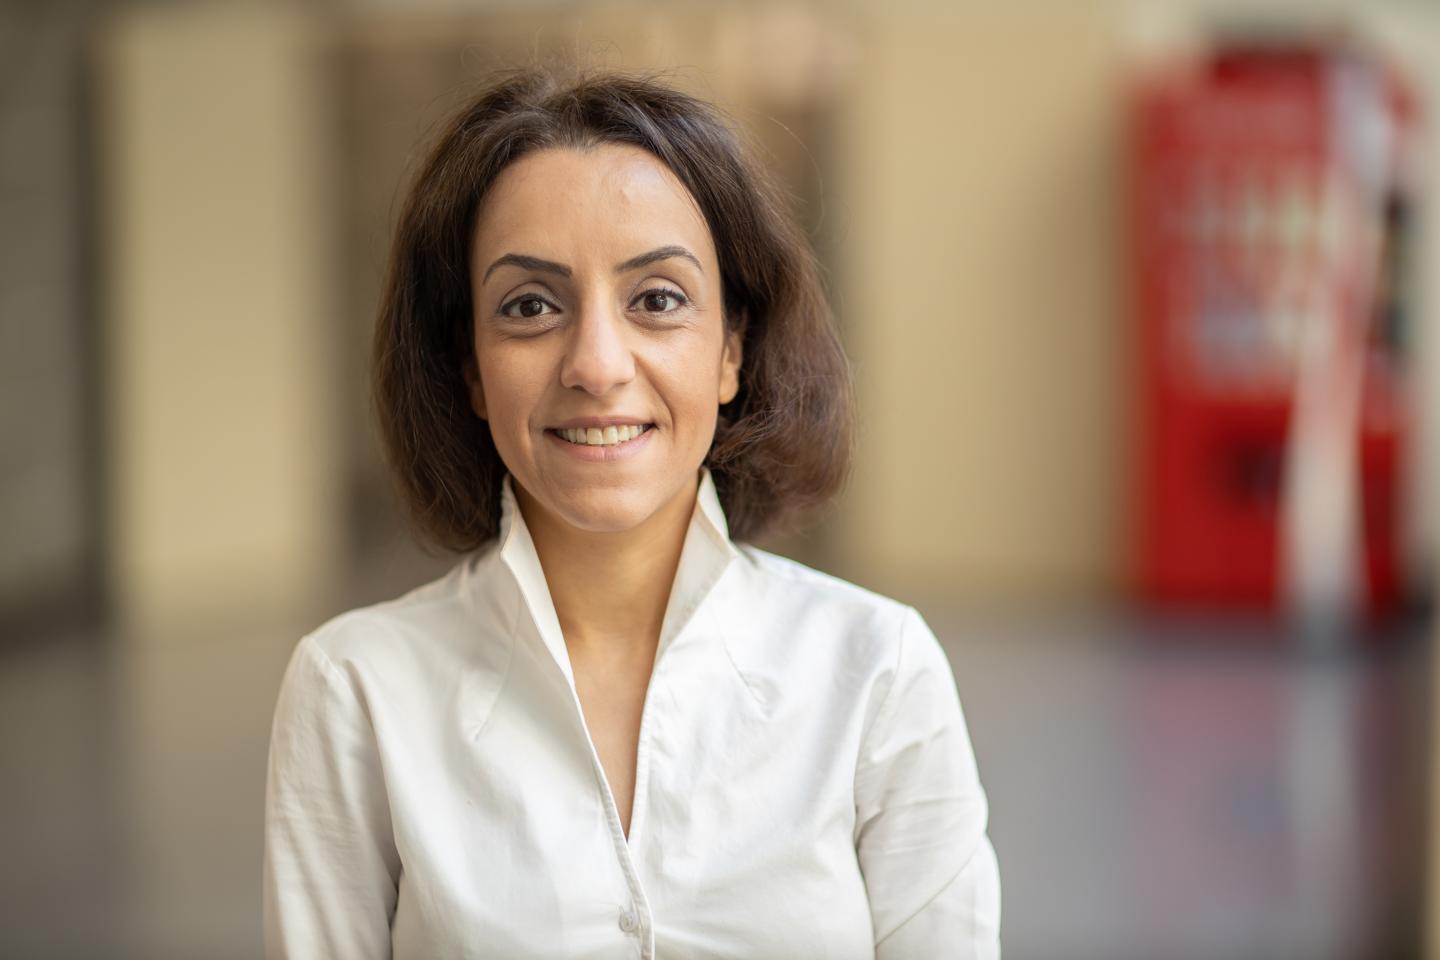 Samira Samiee-Zafarghandy